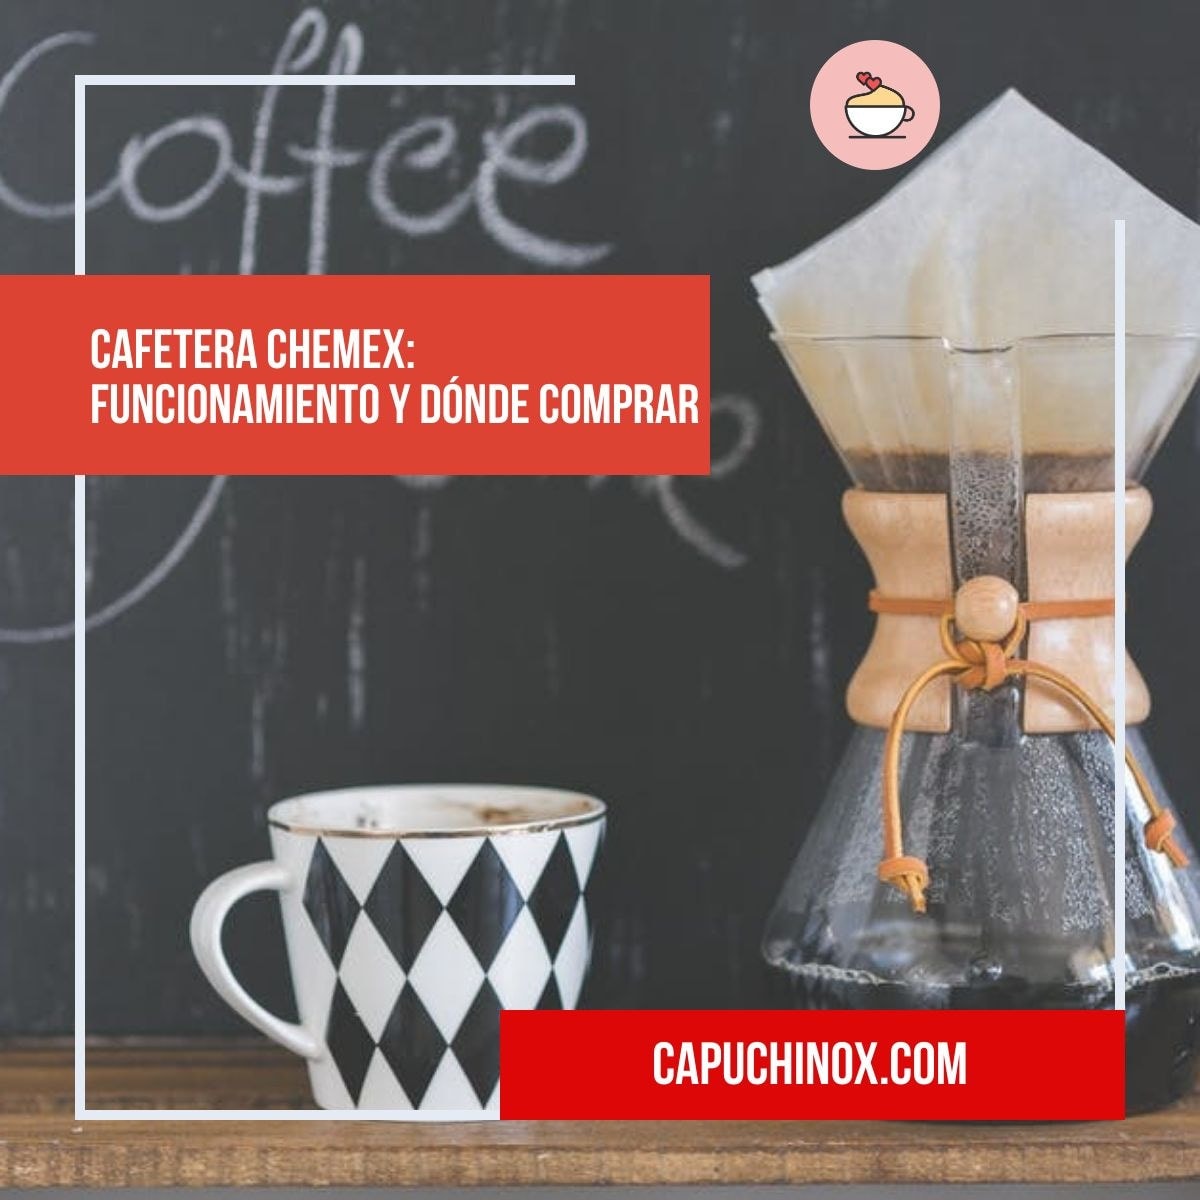 Cafetera Chemex: funcionamiento y dónde comprar